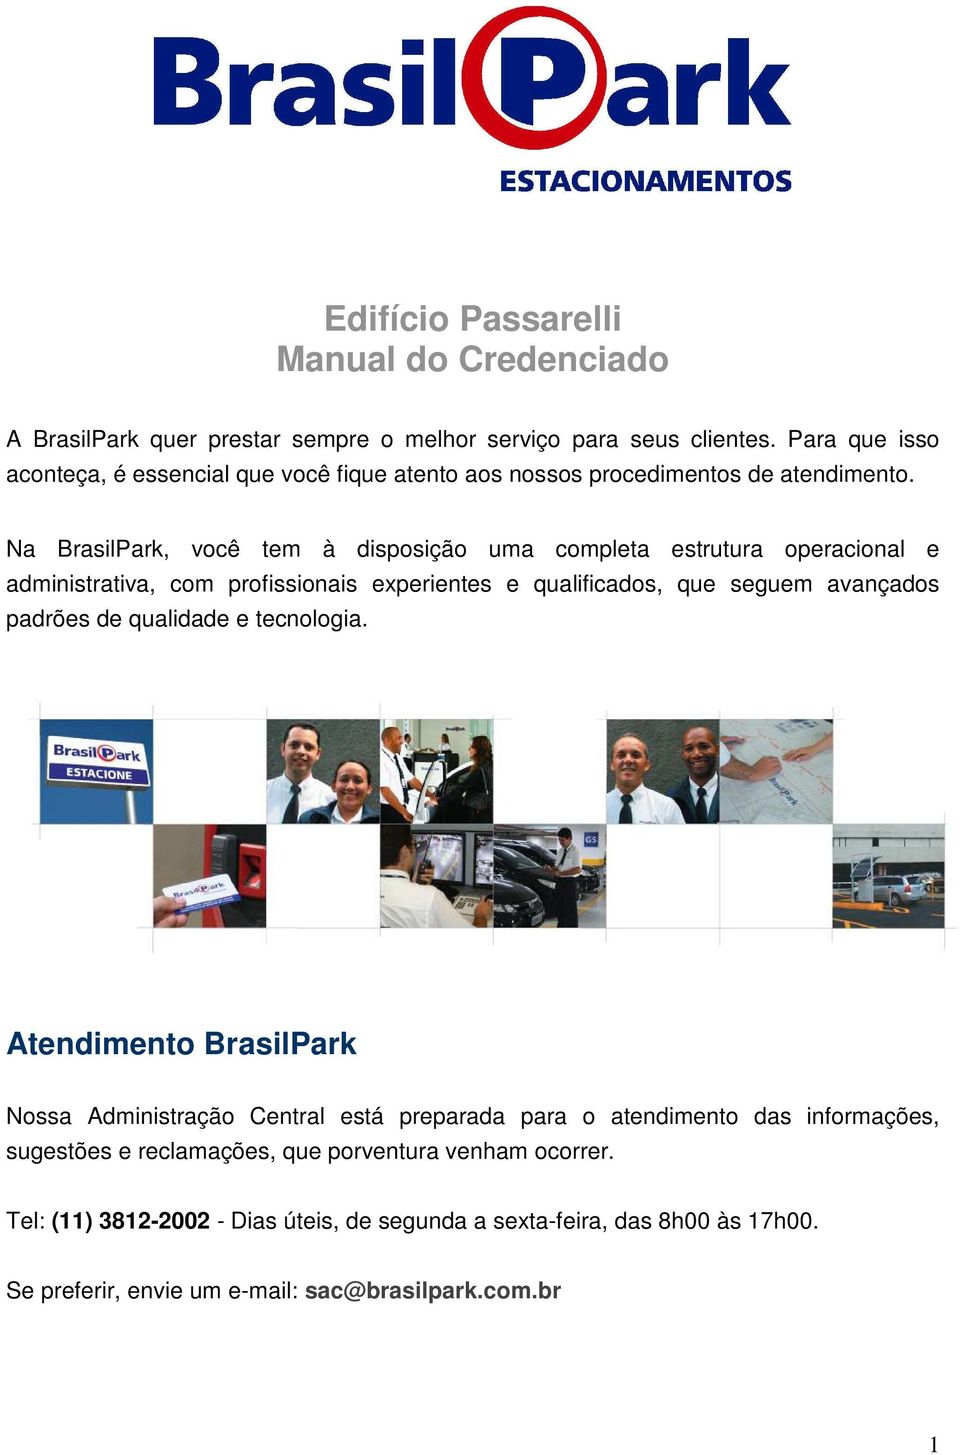 Na BrasilPark, você tem à disposição uma completa estrutura operacional e administrativa, com profissionais experientes e qualificados, que seguem avançados padrões de